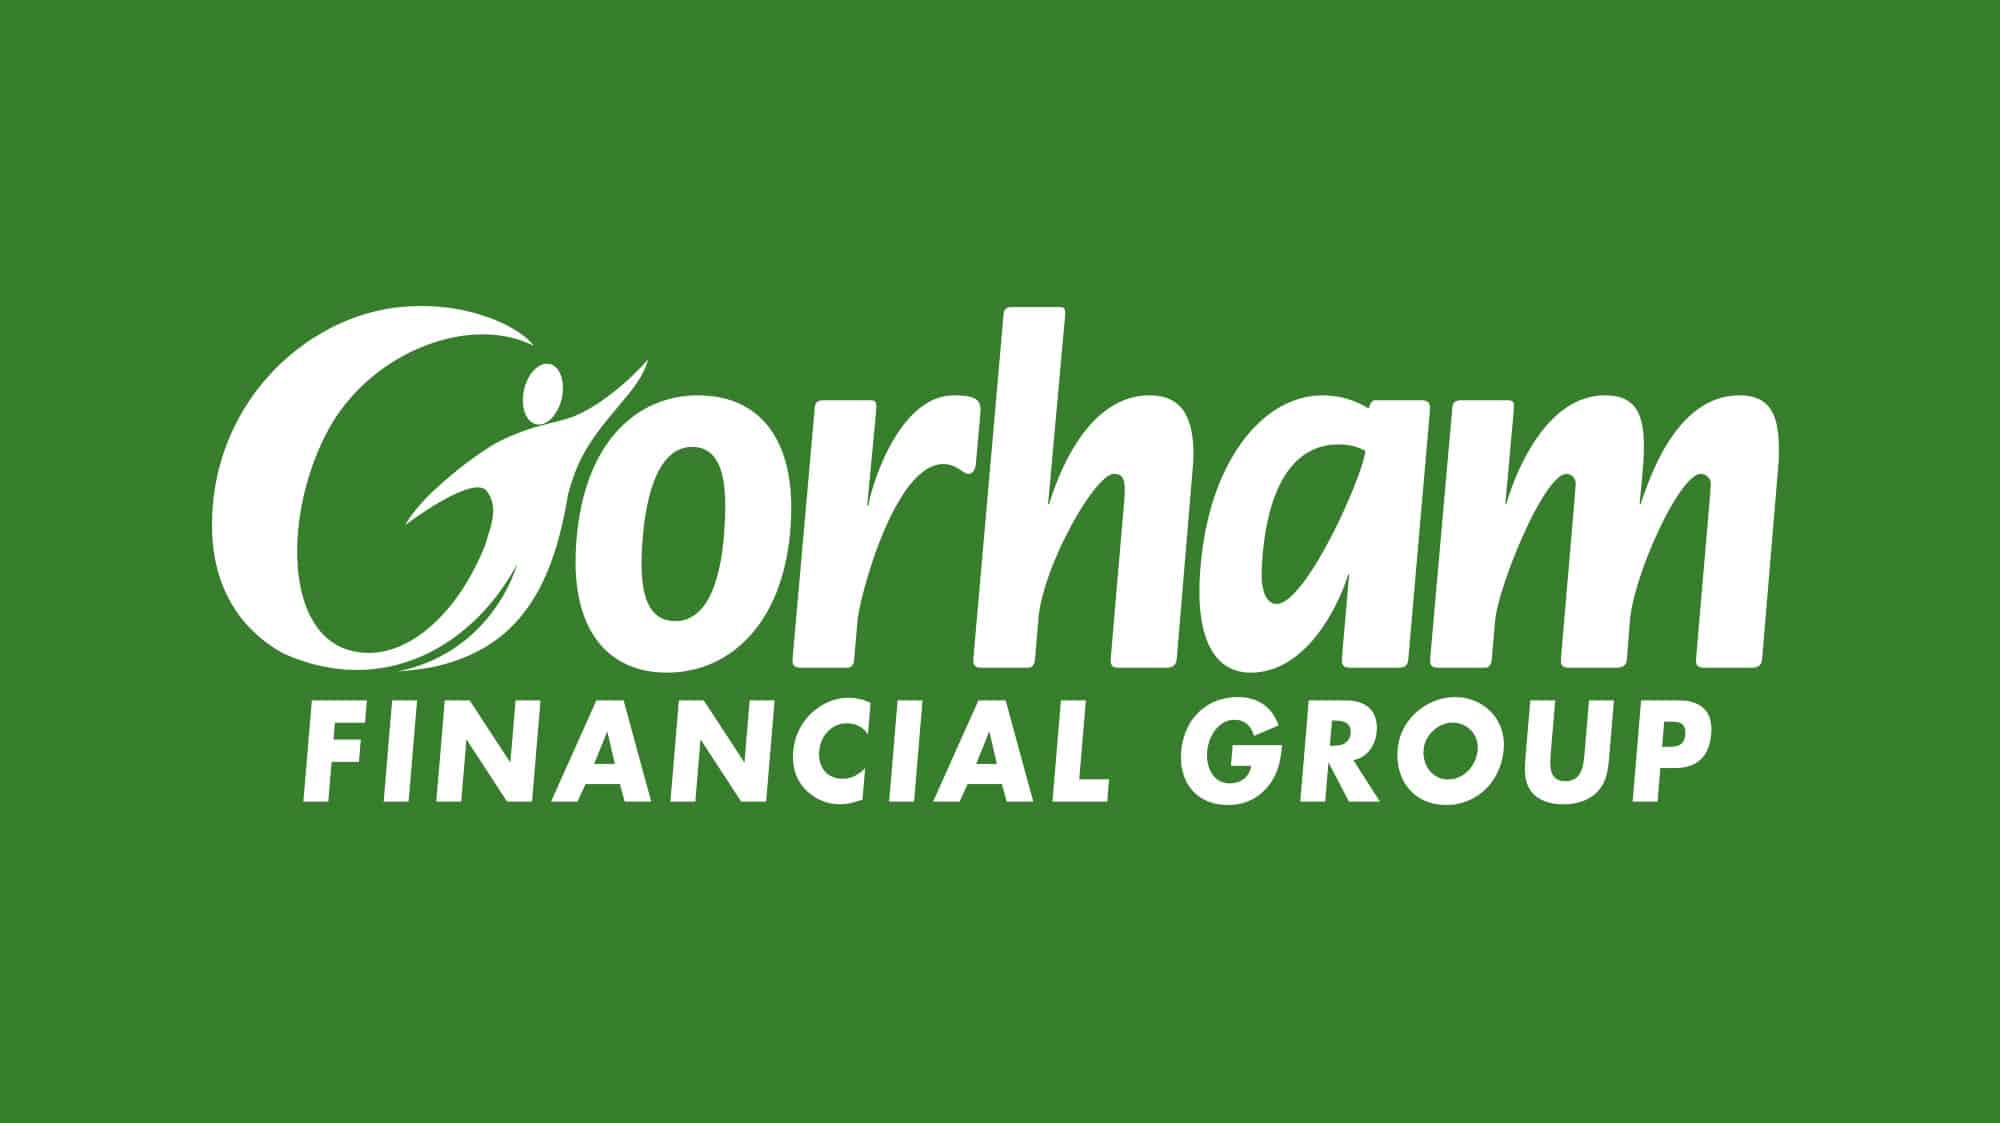 Gorham Savings Bank Financial Group